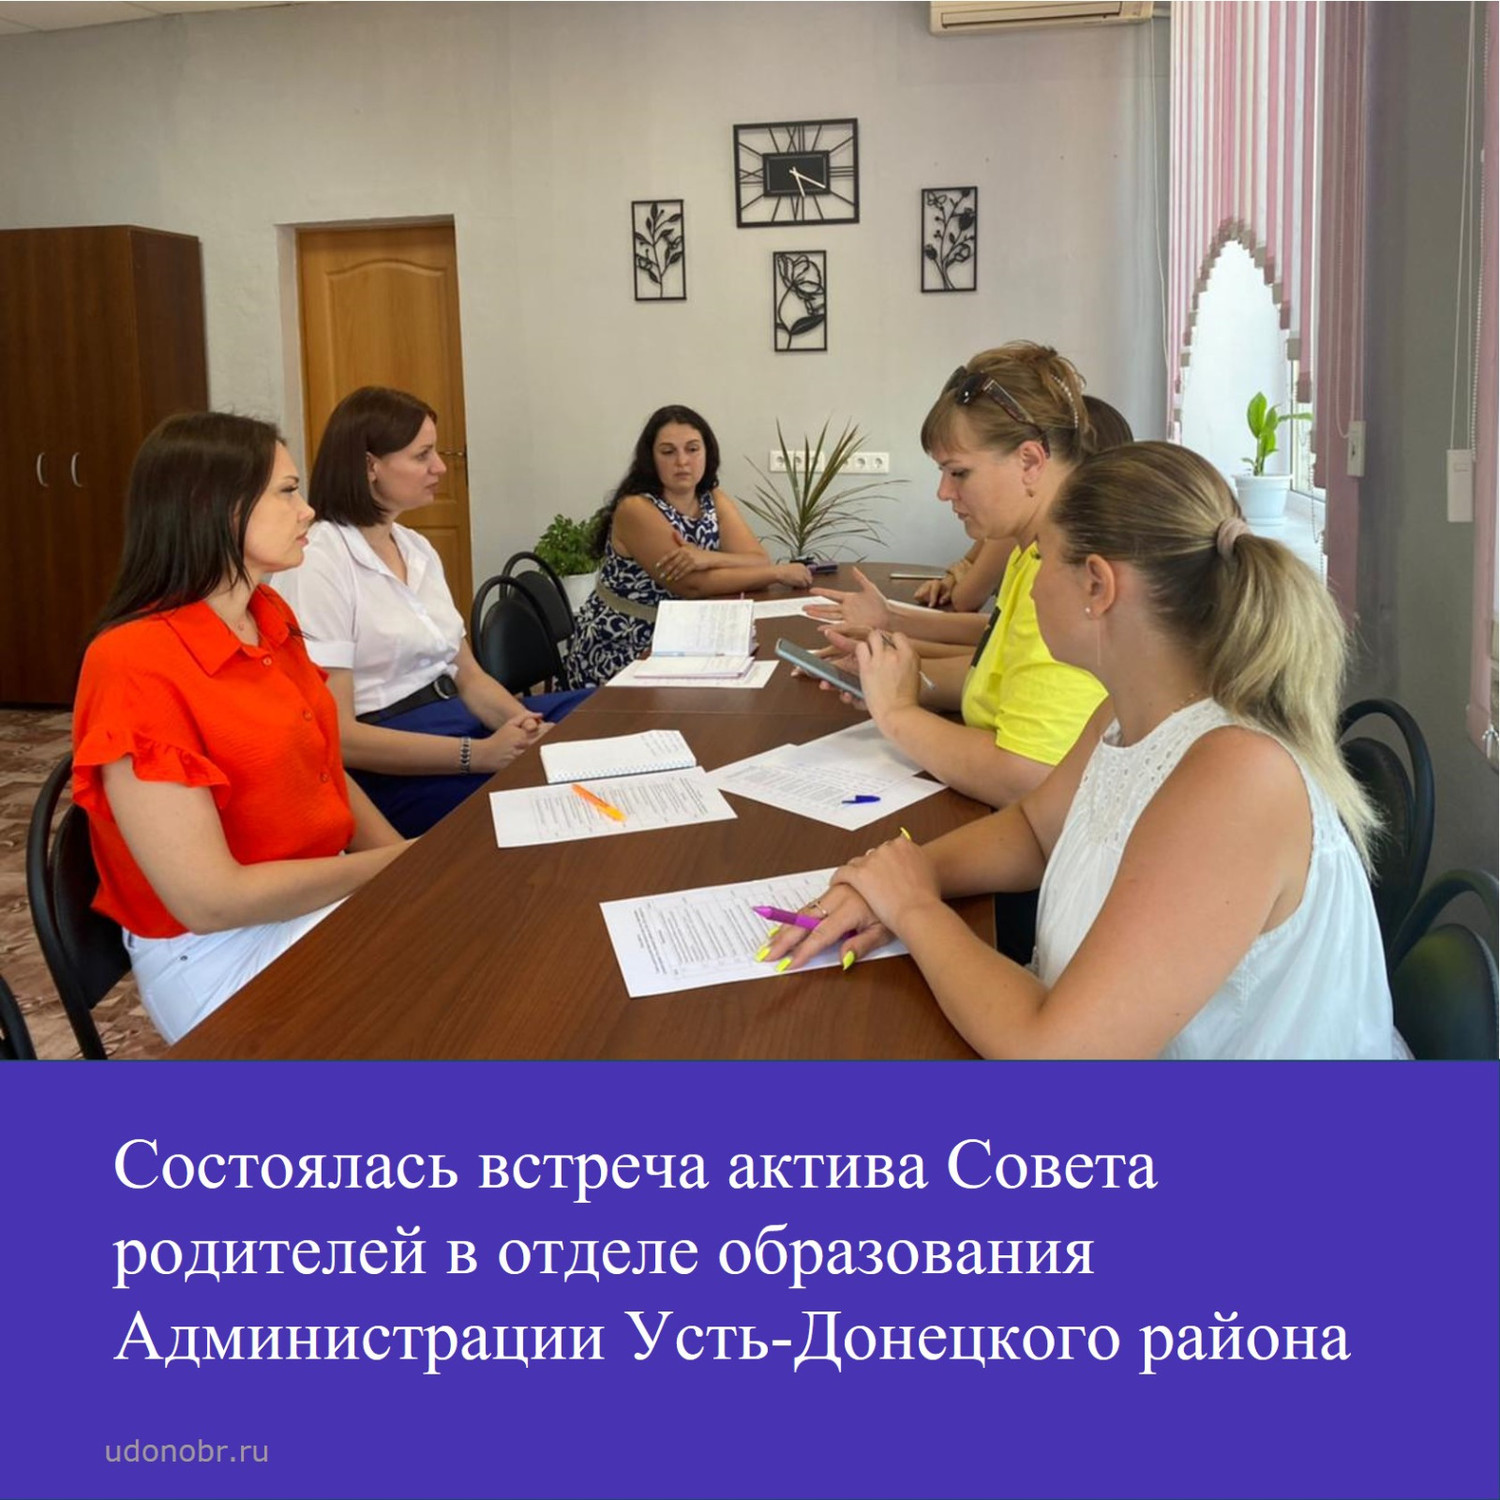 Состоялась встреча актива Совета родителей в отделе образования Администрации Усть-Донецкого района